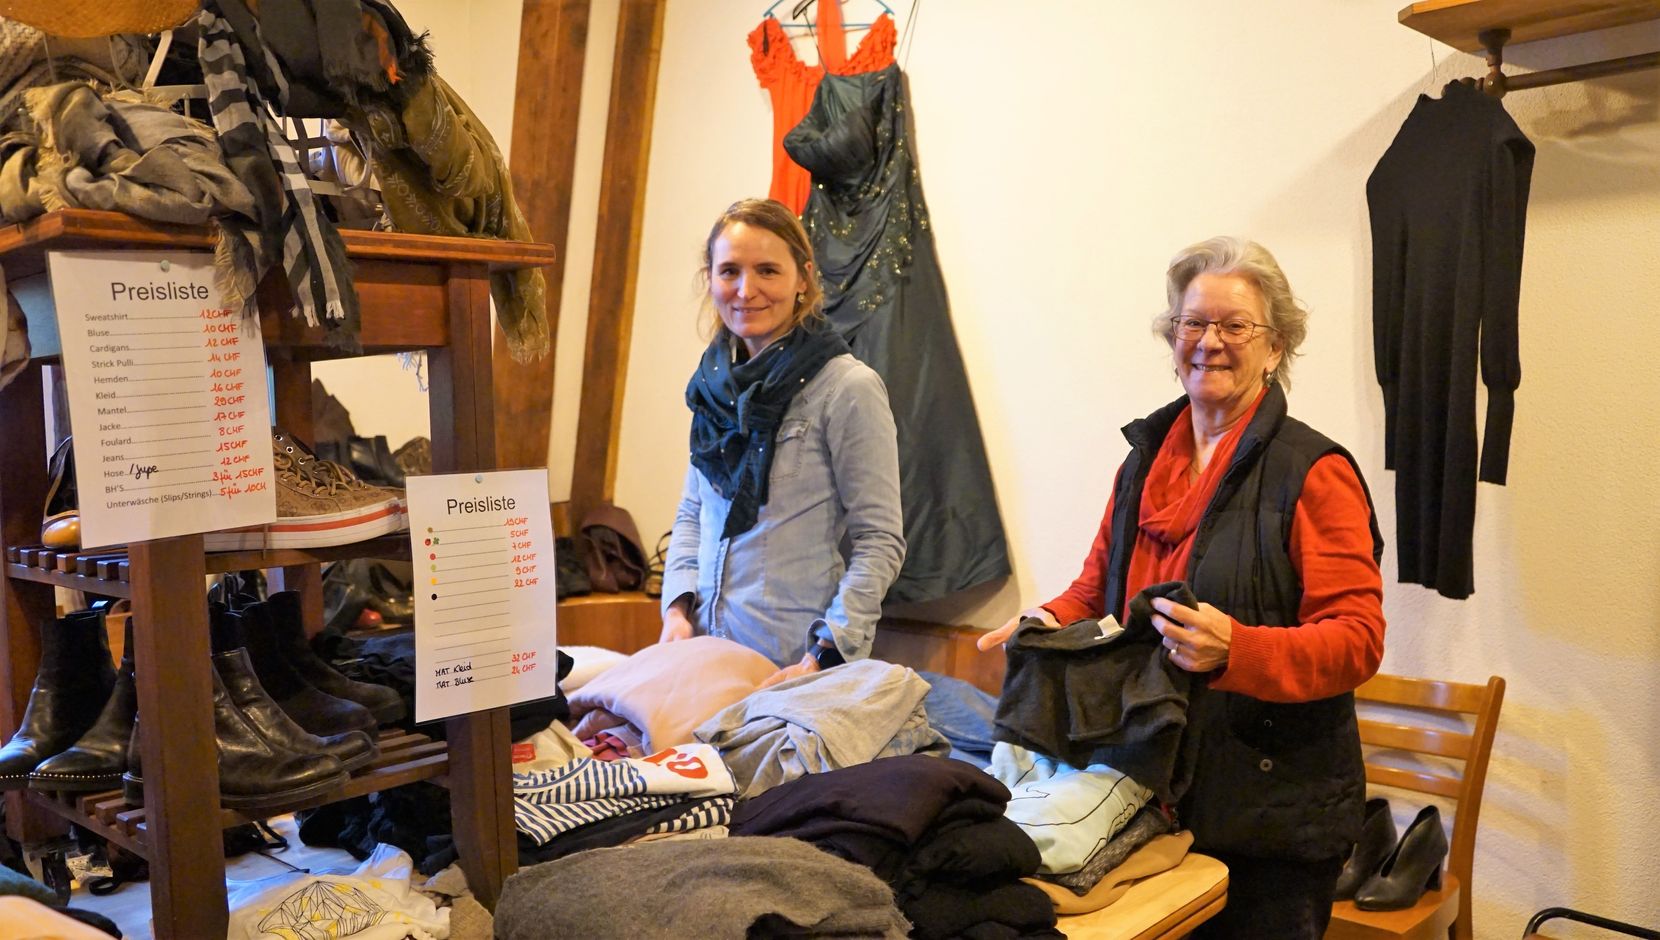 Man sieht zwei Frauen in einem improvisierten Second-Hand-Shop. Vor ihnen liegen viele Kleider.